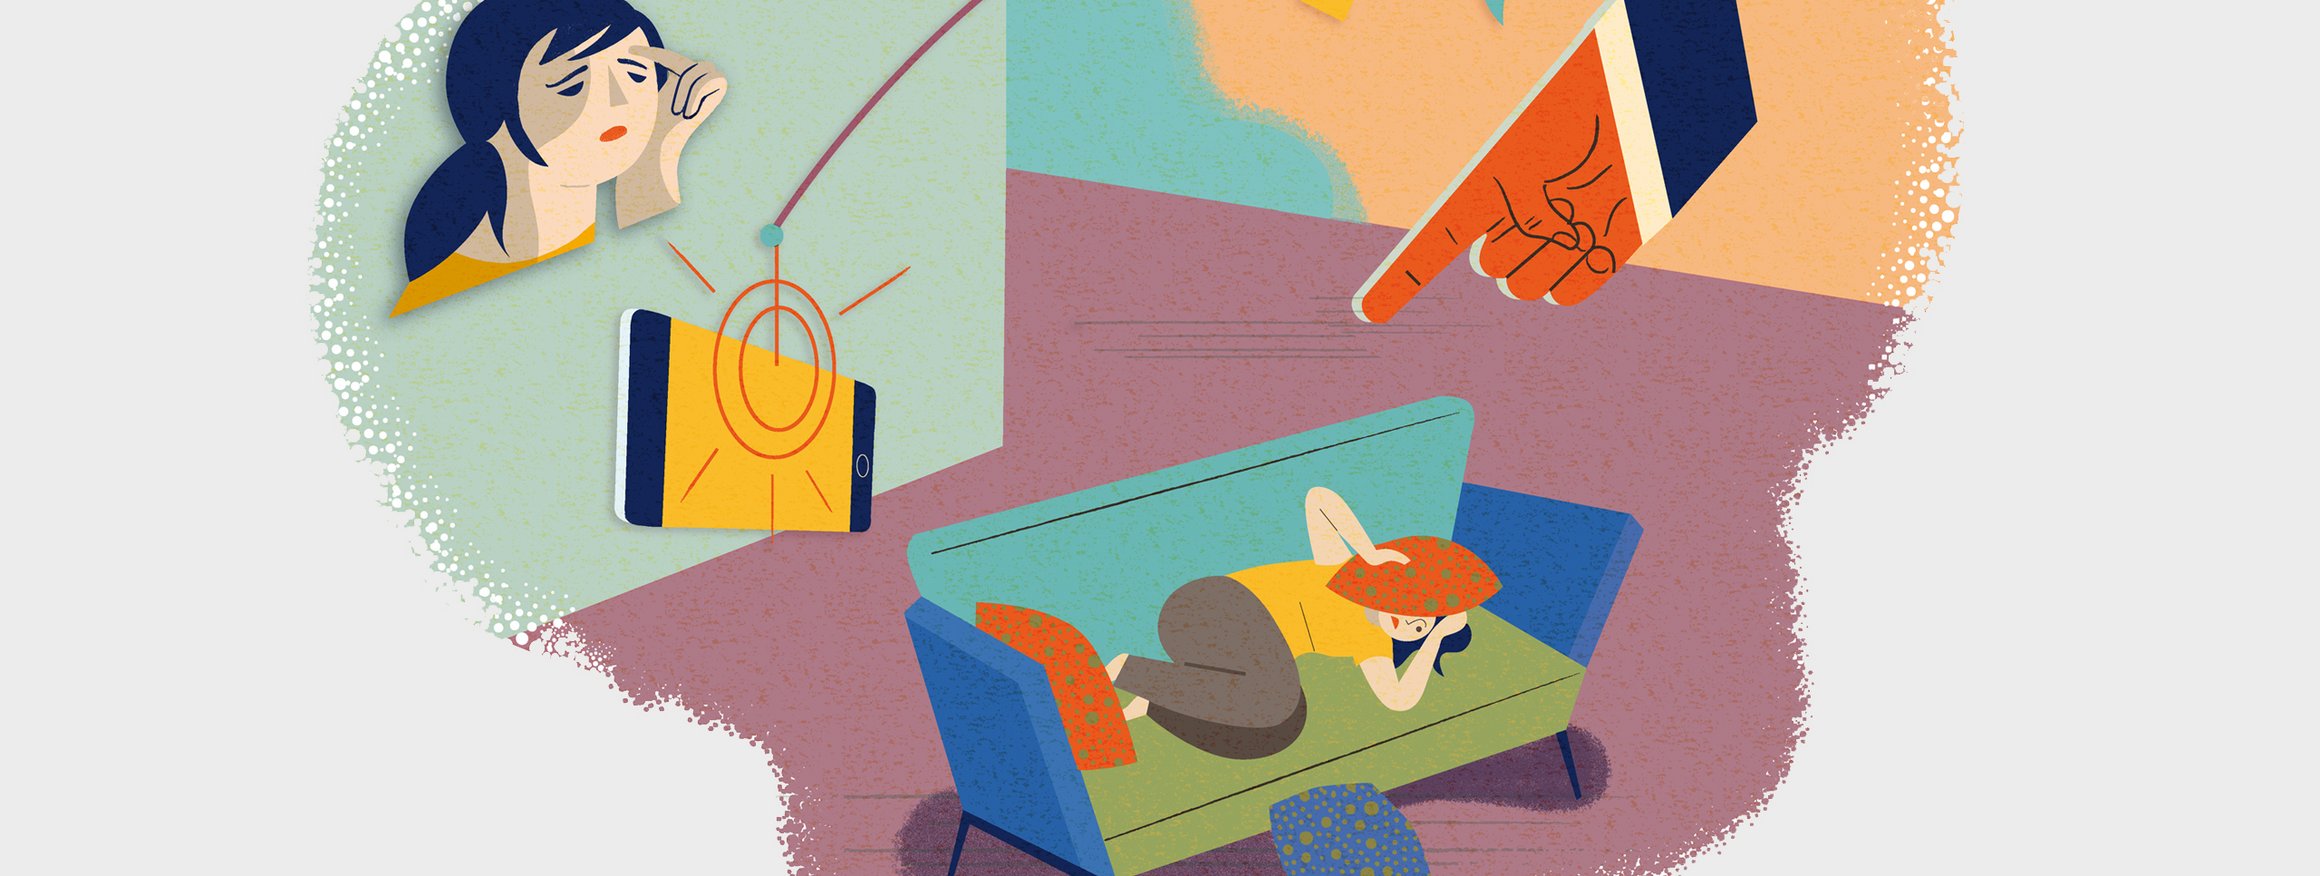 Die Illustration zeigt eine gestresste Frau, die auf dem Sofa liegend, sich ein Kissen vor den Kopf hält, während eine Hand streng auf sie zeigt